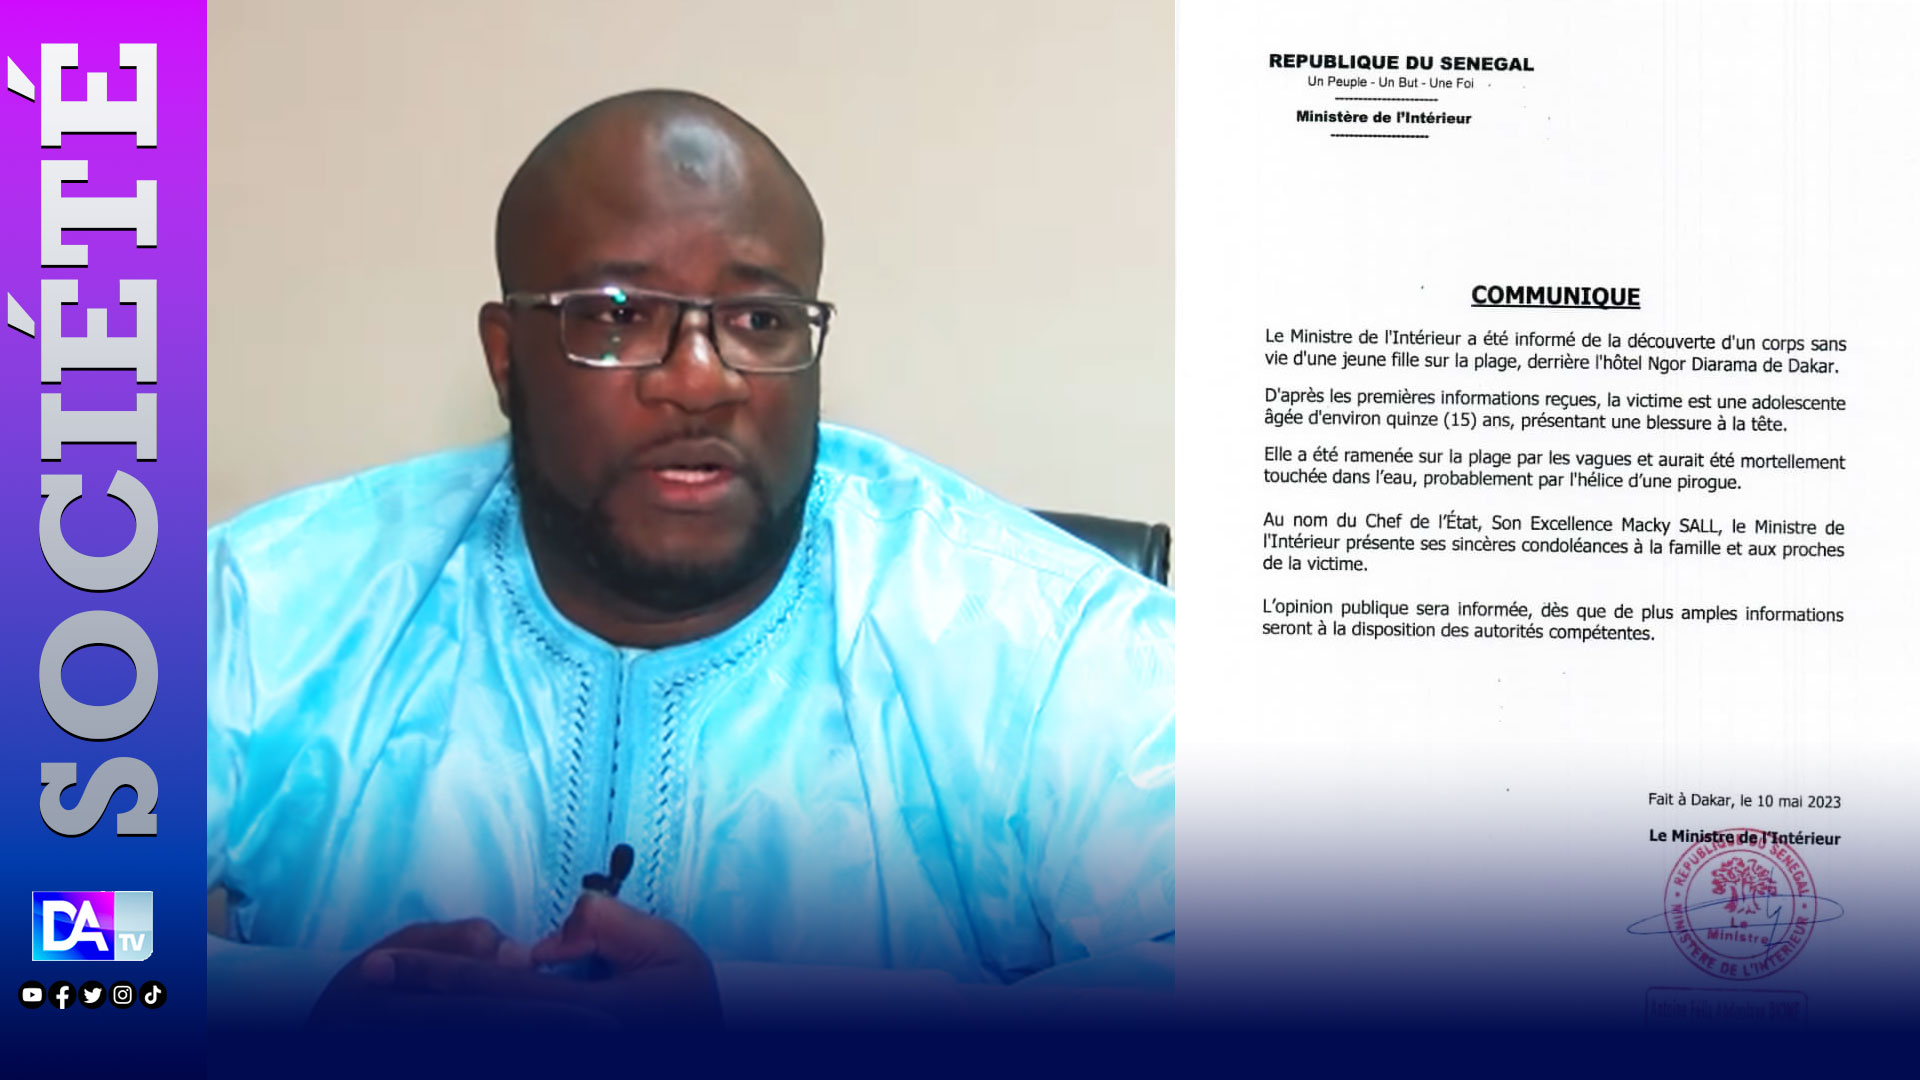 Communiqué du ministère de l'intérieur sur le décès de la jeune fille à Ngor: " Monsieur le Ministre de l'intérieur Antoine Félix Diome, ce communiqué est loin d'etre convaincant( Birahim Seck, Forum Civil).